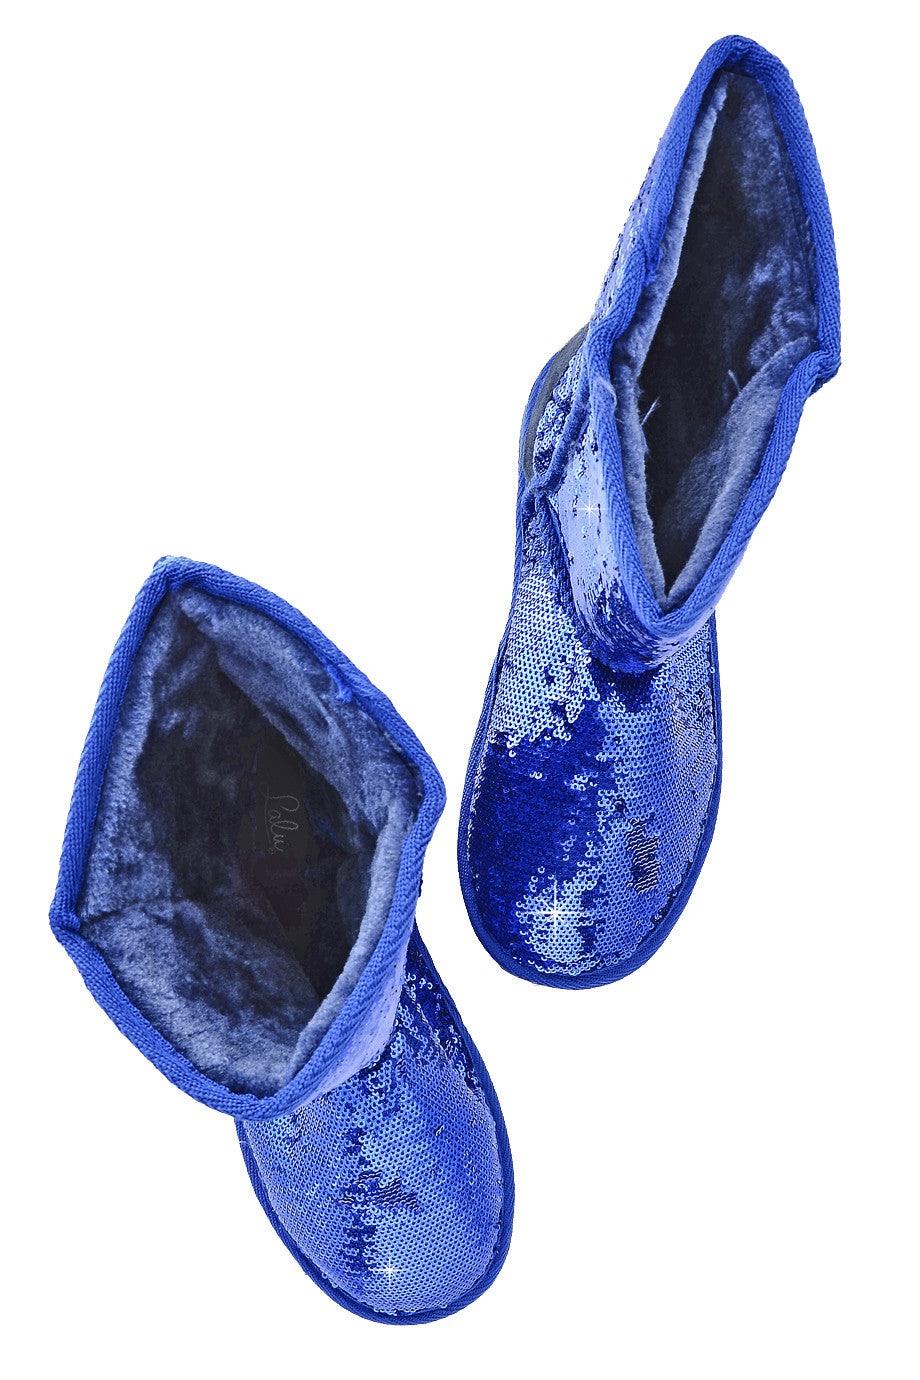 Mπλε Μπότες με Παγιέτες | Γυναικεία Παπούτσια